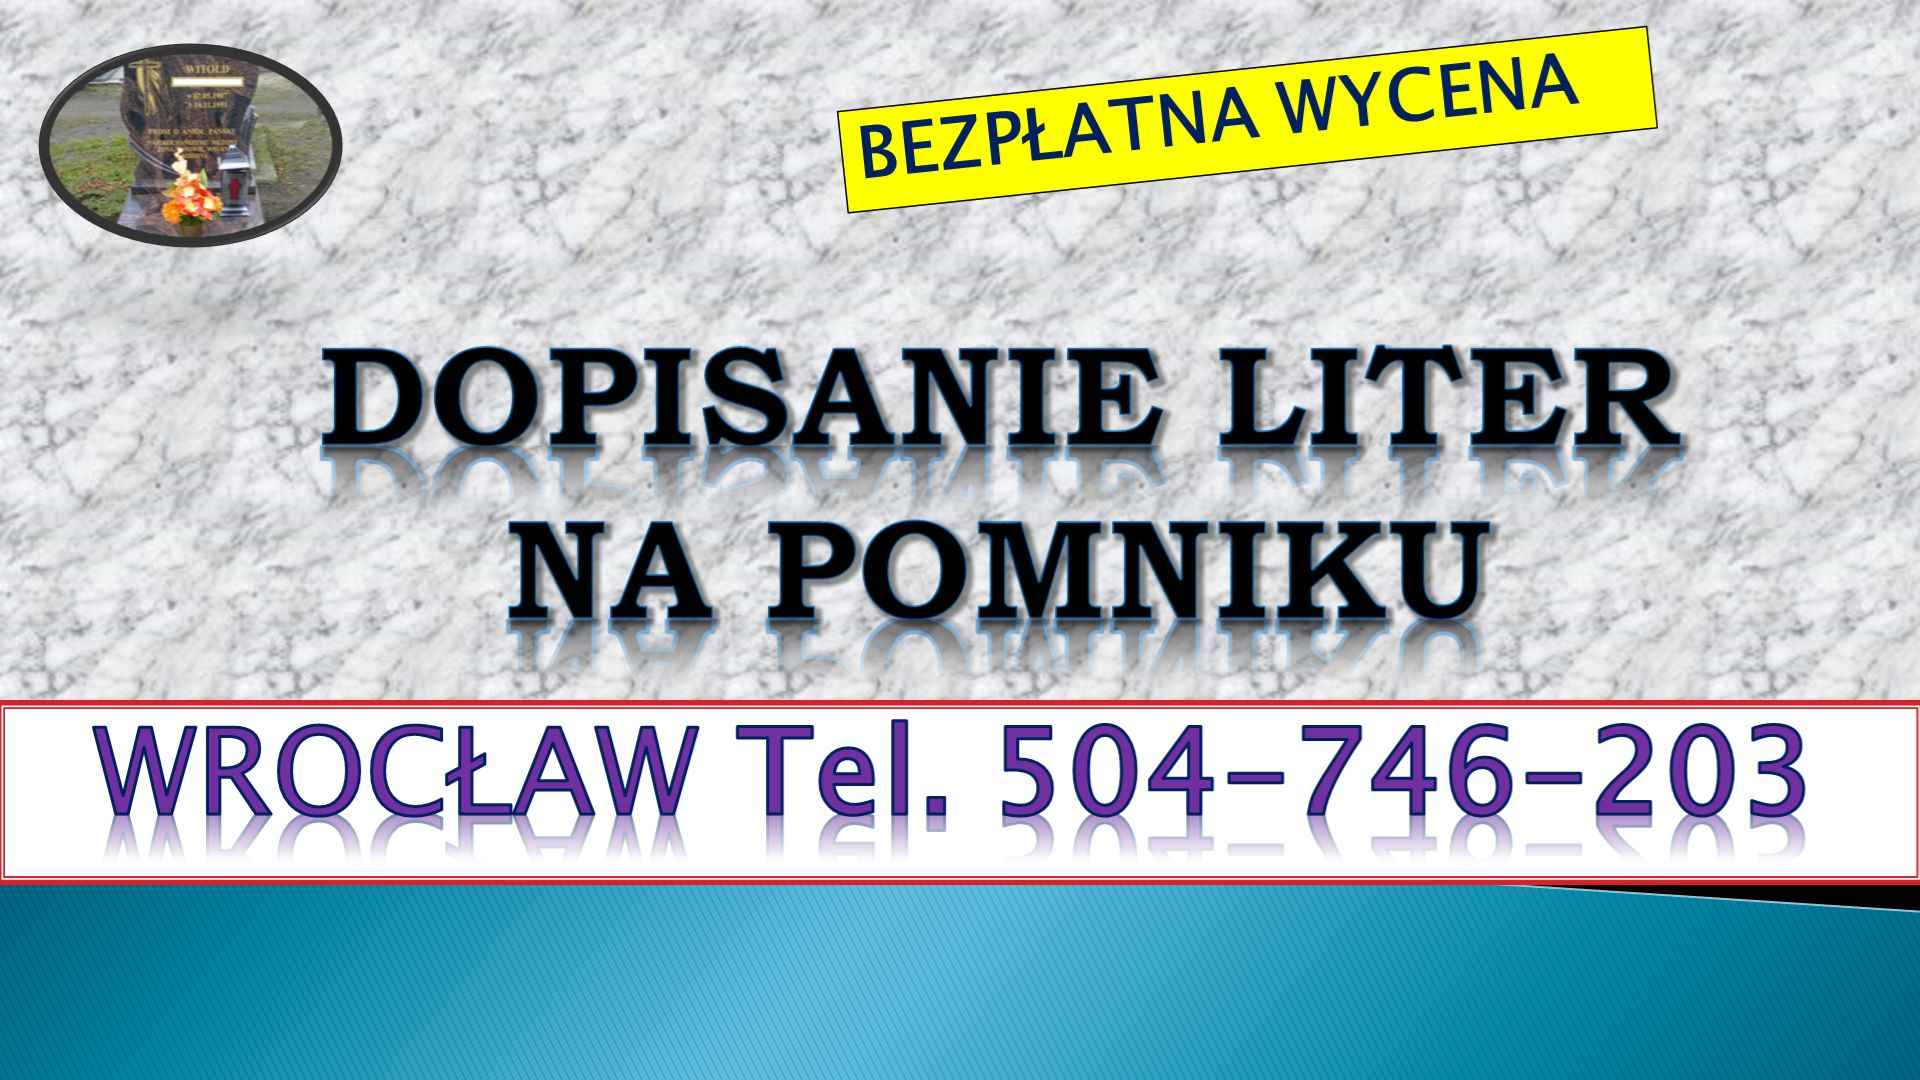 Dopisanie liter na pomniku, tel. 504-746-203, Wrocław, dodanie napisów Psie Pole - zdjęcie 1